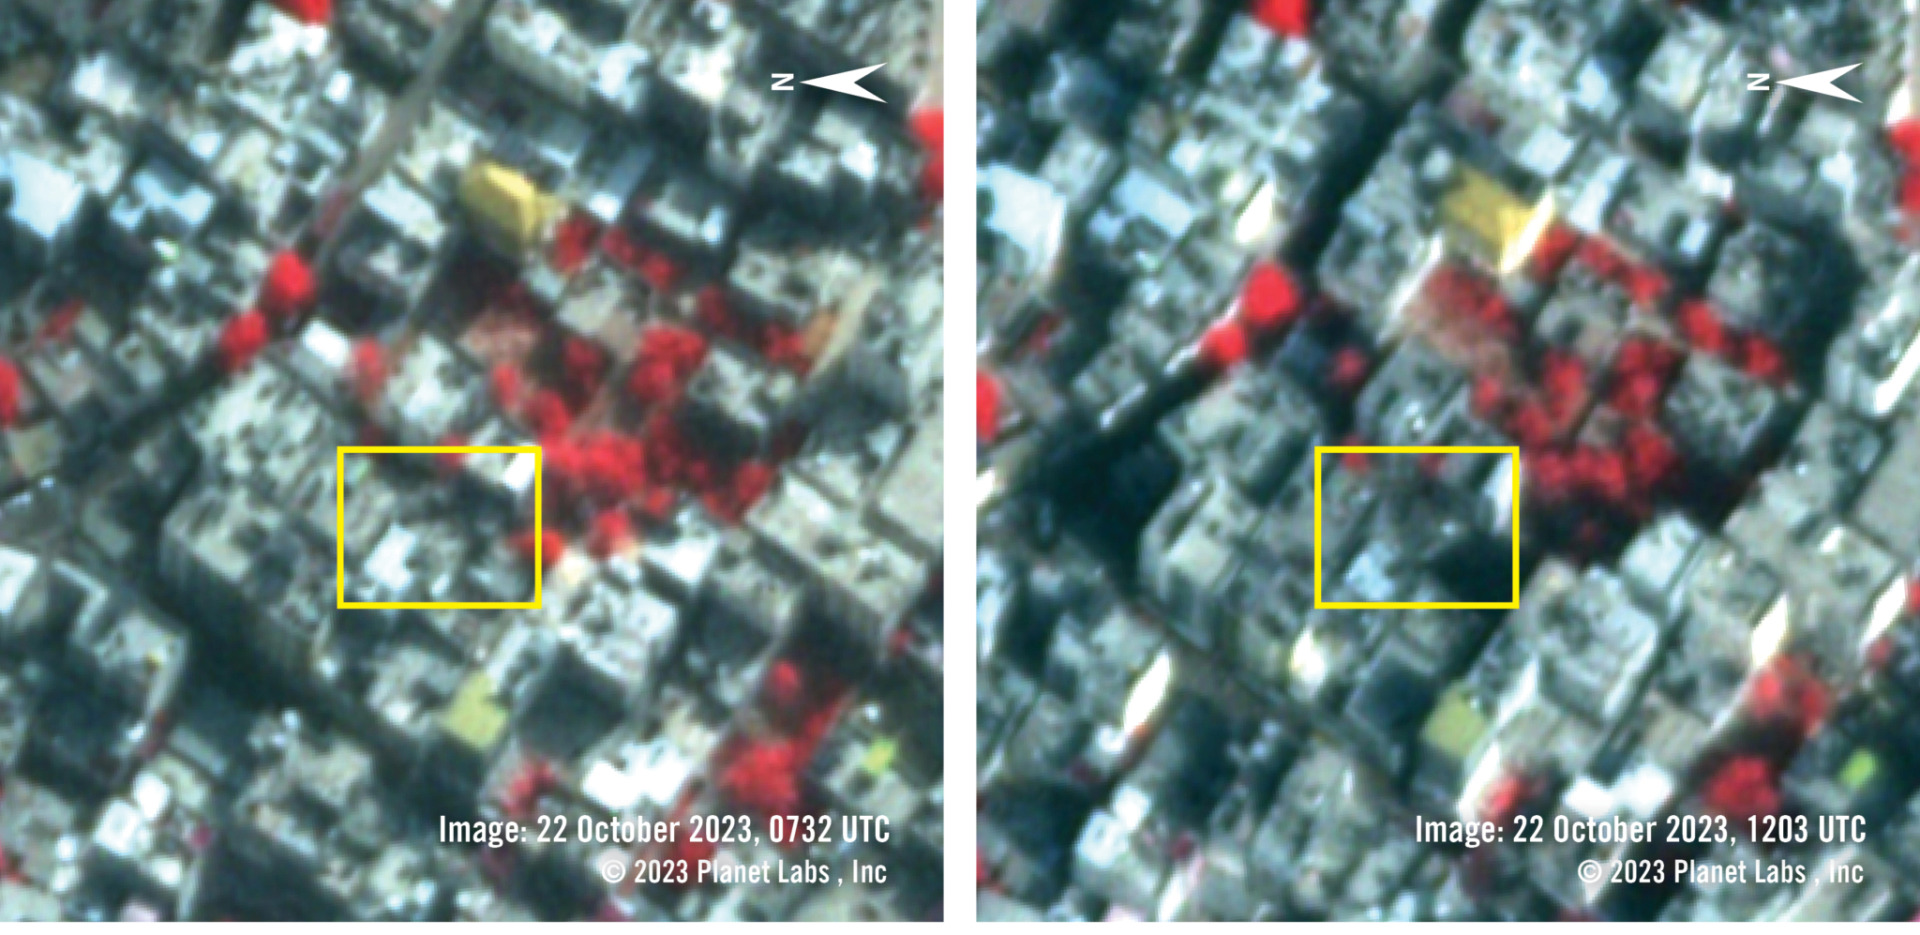 2023年10月22日的近紅外線假色衛星影像顯示空襲之前（左）和之後（右）的被攻擊區域。植被呈現微紅色調，建築環境則呈現灰色和黃色色調。受損區域呈現比事件發生前更深的灰色。